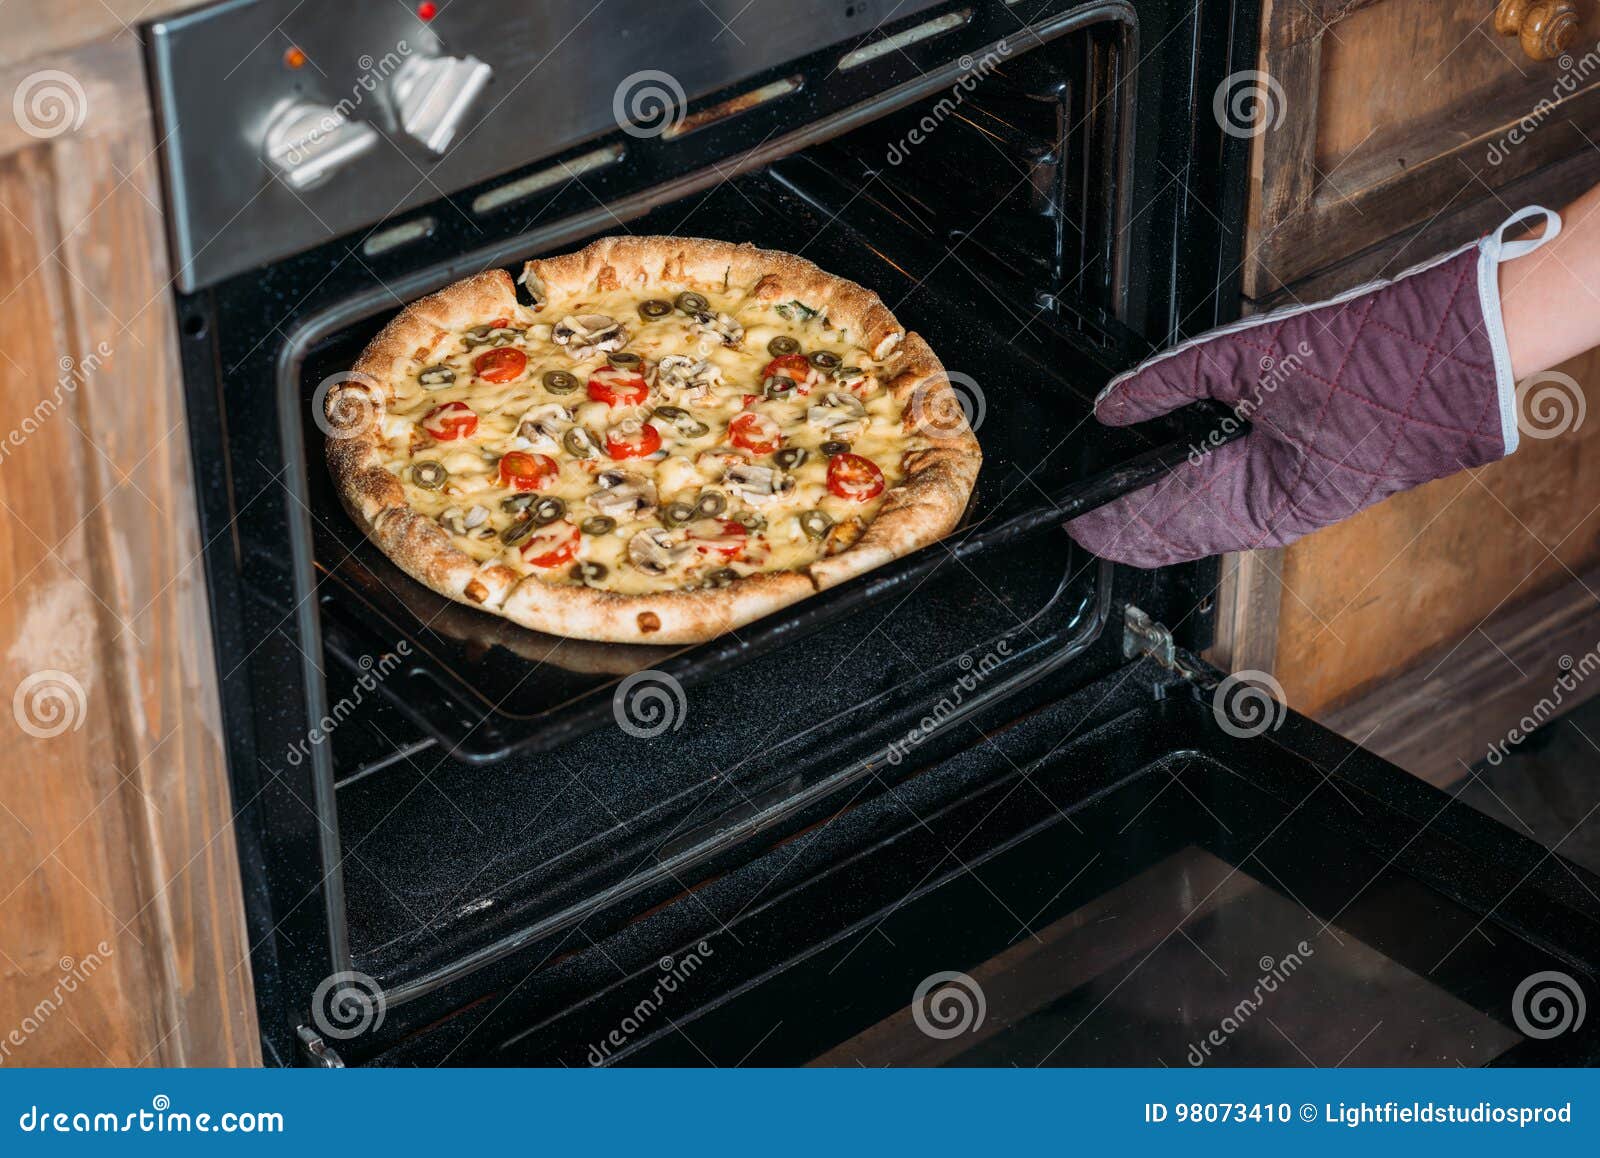 хлеб в духовке пицца фото 87